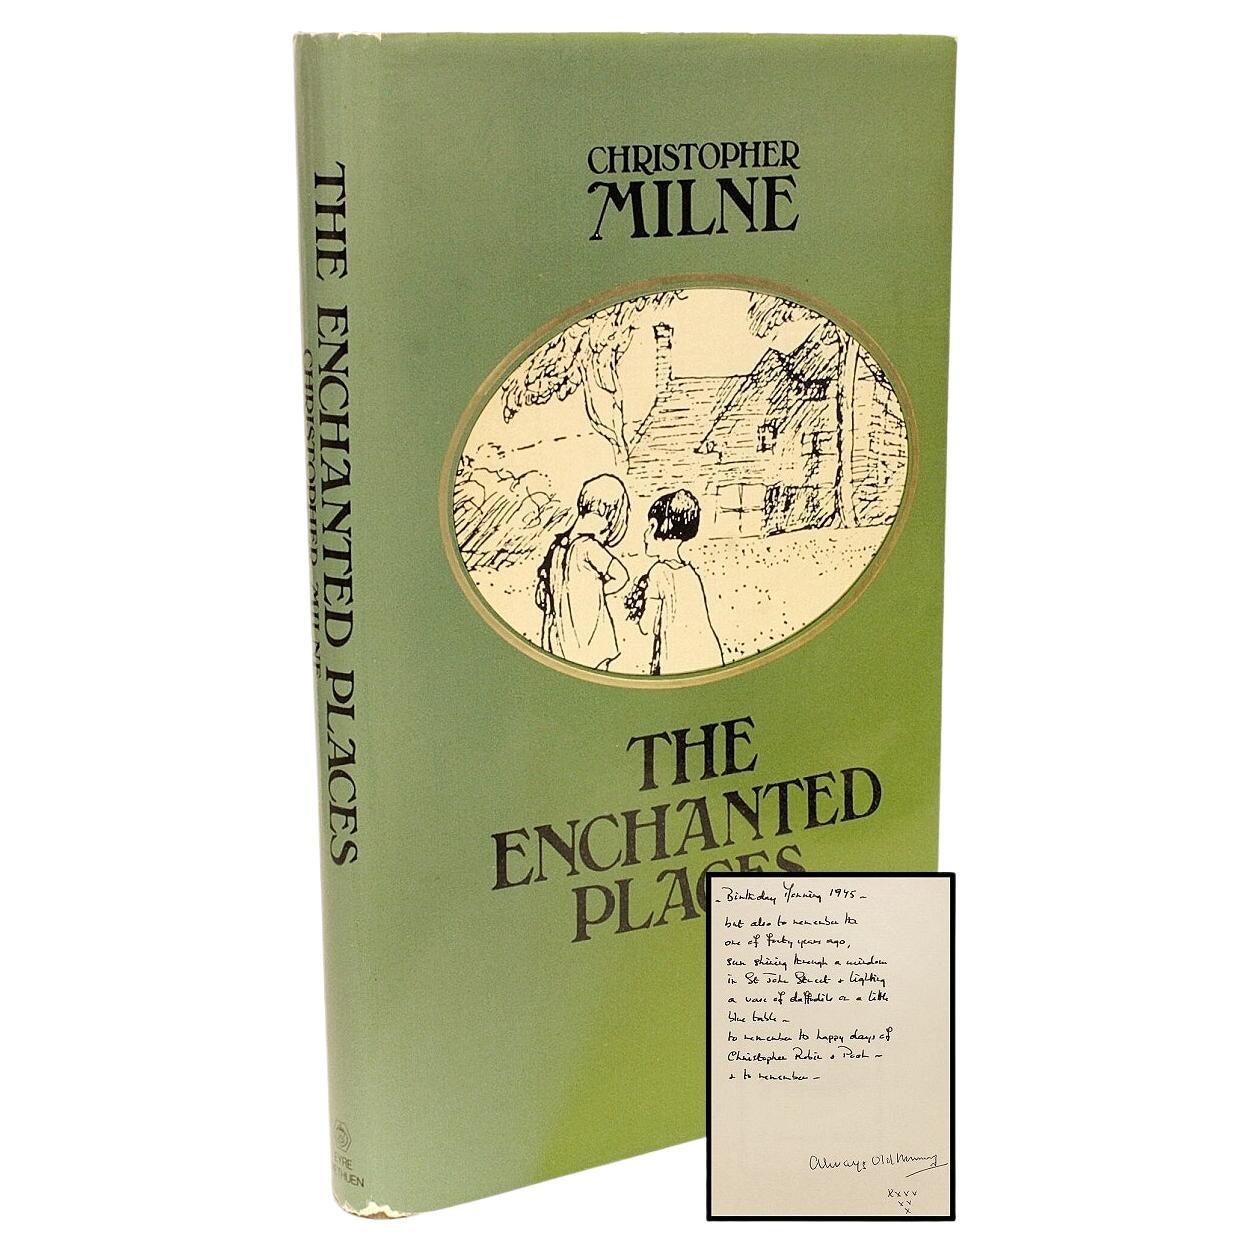 Christopher Milne. Enchanted Places, 1ère édition avec inscription de Milne & His Nanny, 1974